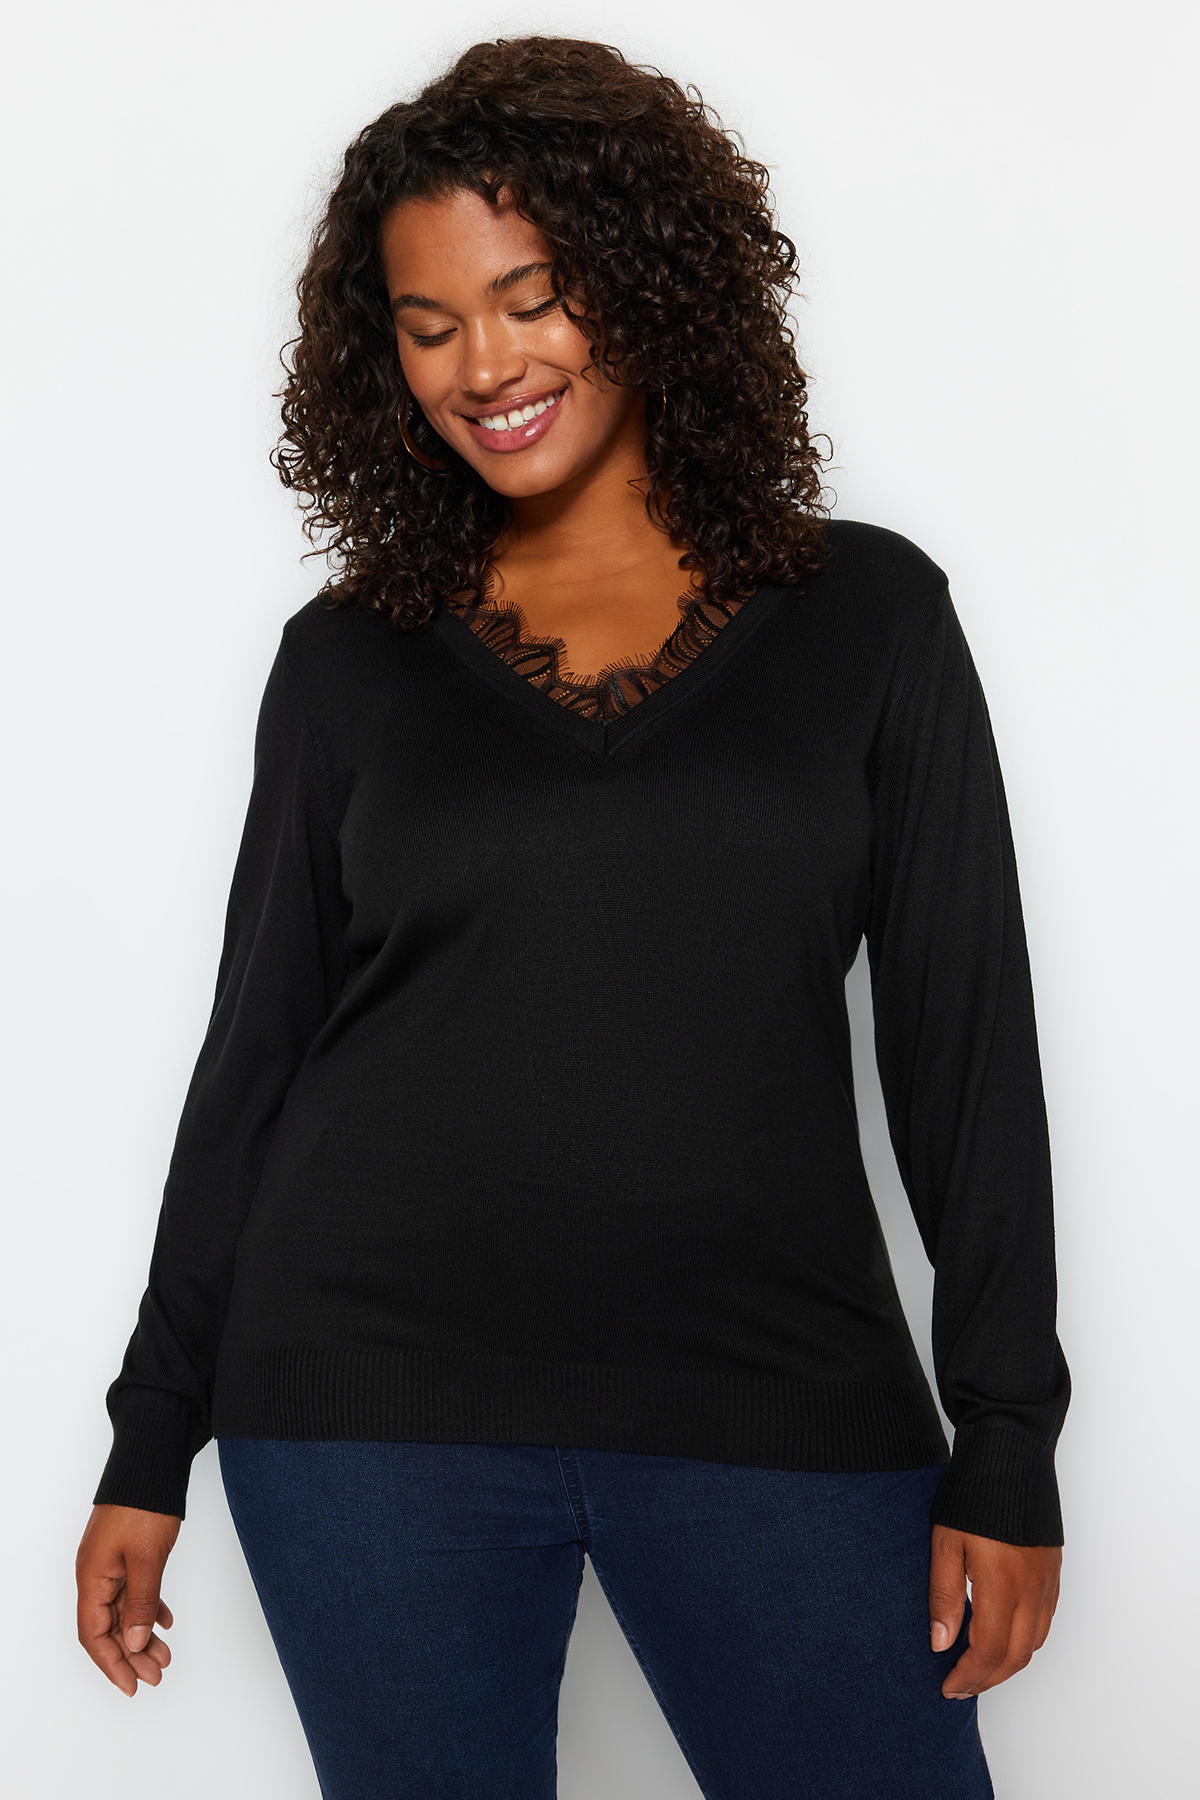 Trendyol Plus Size Black Lace Detailed Knitwear Sweater